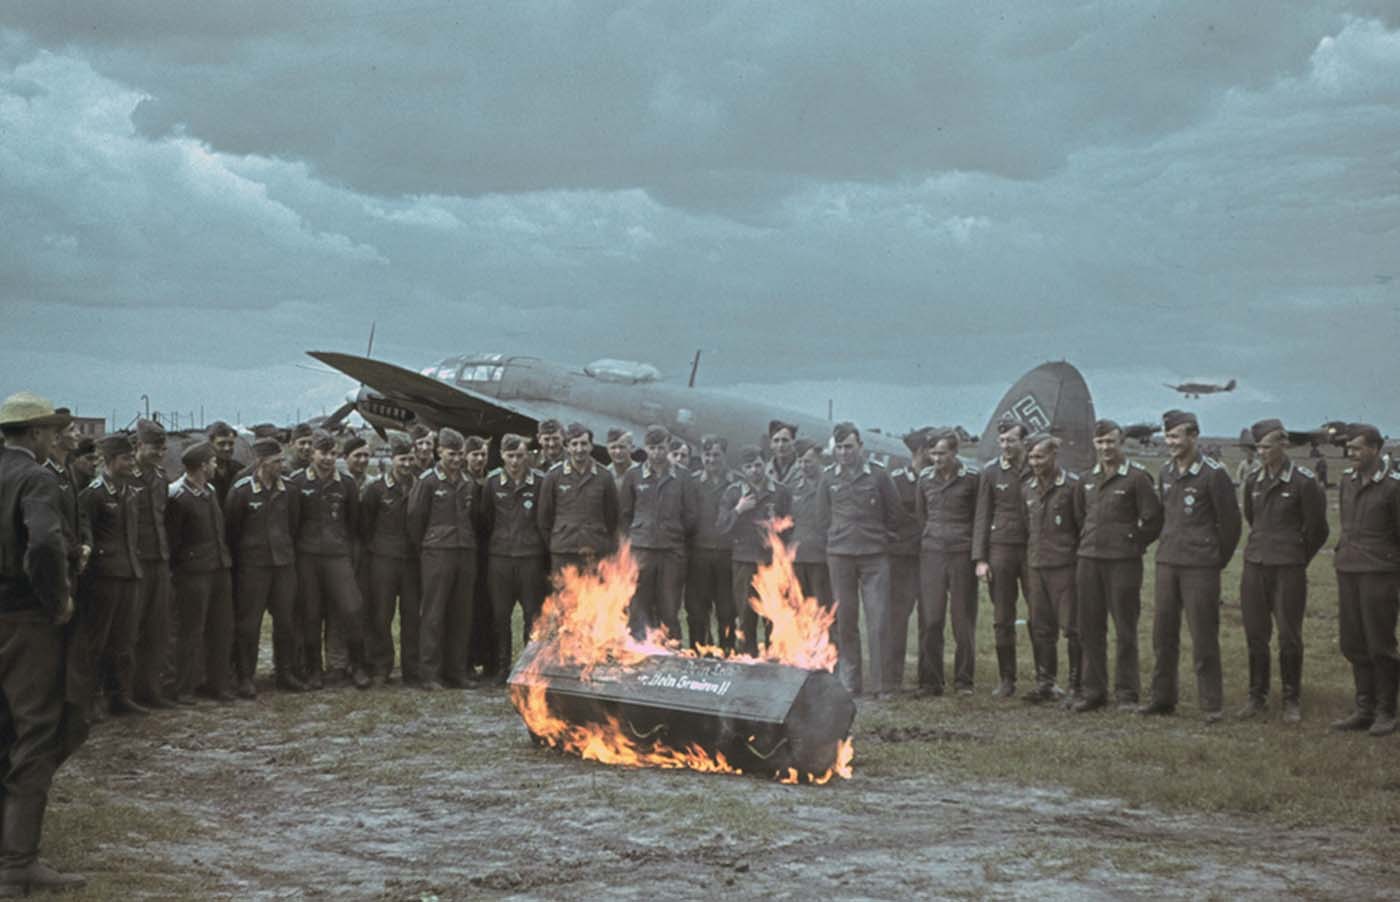 Пилоты люфтваффе на фоне Heinkel He 111 сжигают свой страх на ритуале приема новых летчиков в свои ряды, Харьков, 1942 г.